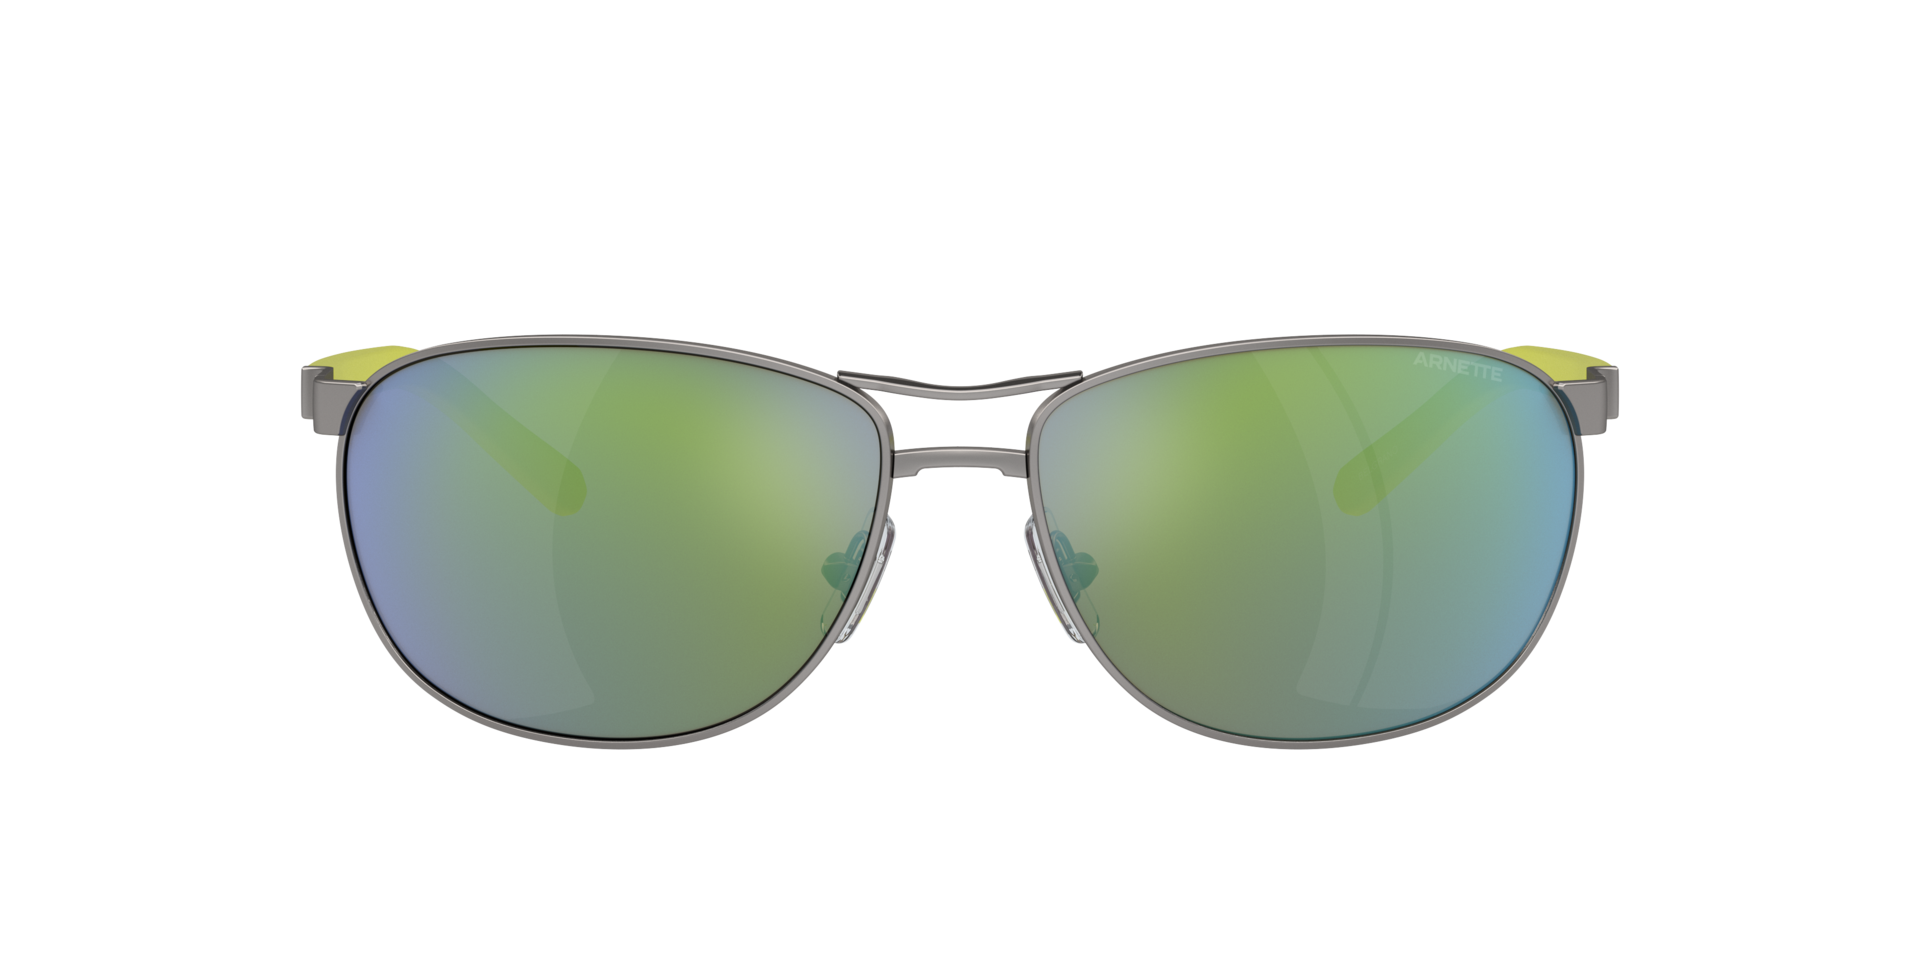 Das Bild zeigt die Sonnenbrille AN3090 745/8N von der Marke Arnette in gunmetal.